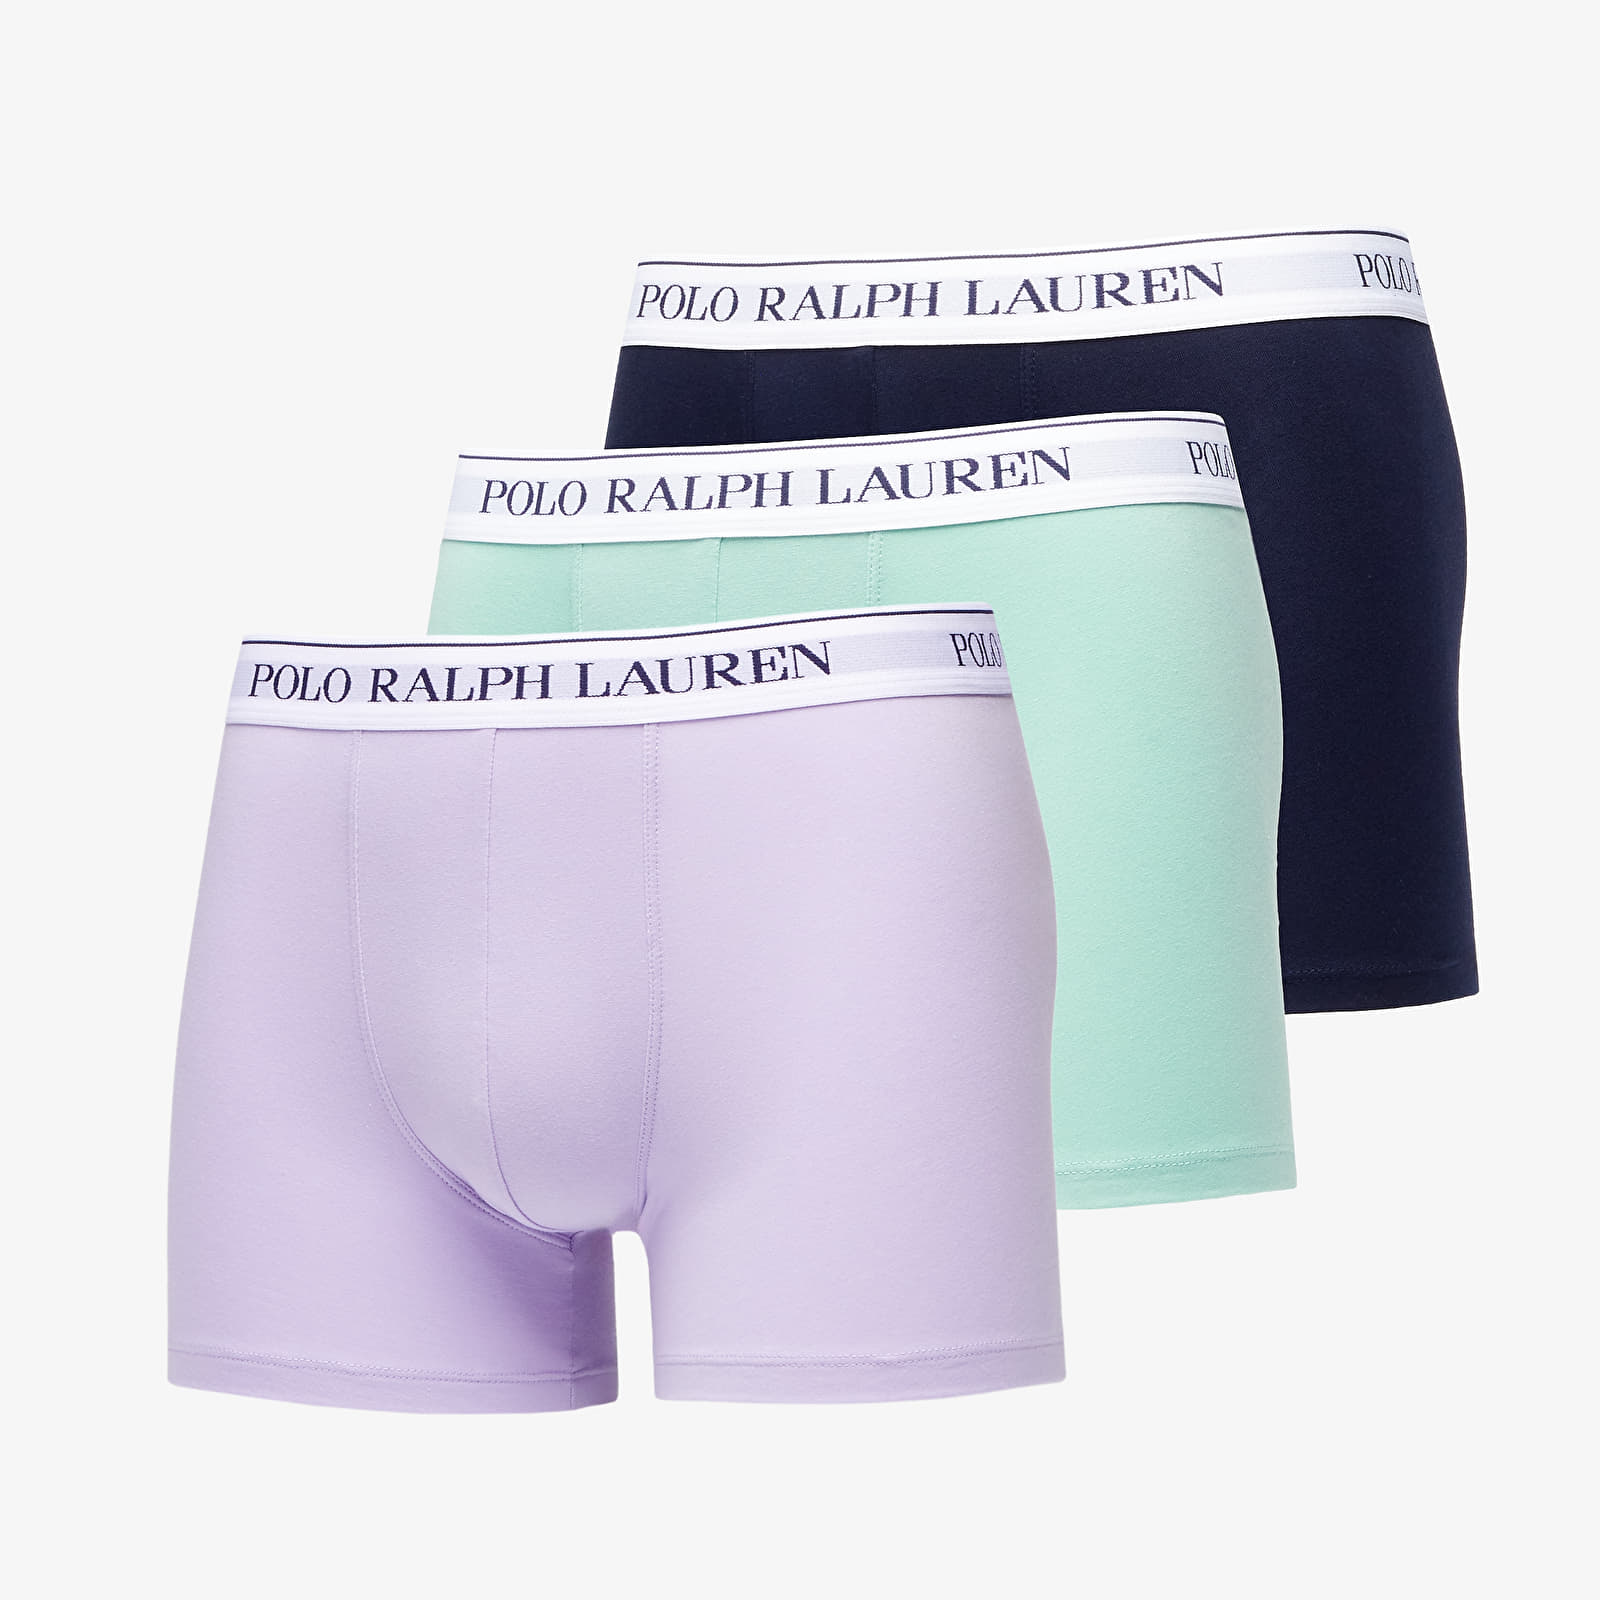 Ralph Lauren Stretch Cotton Boxer Brief 3-Pack Seam Foam/ Dark Navy/ Lavender